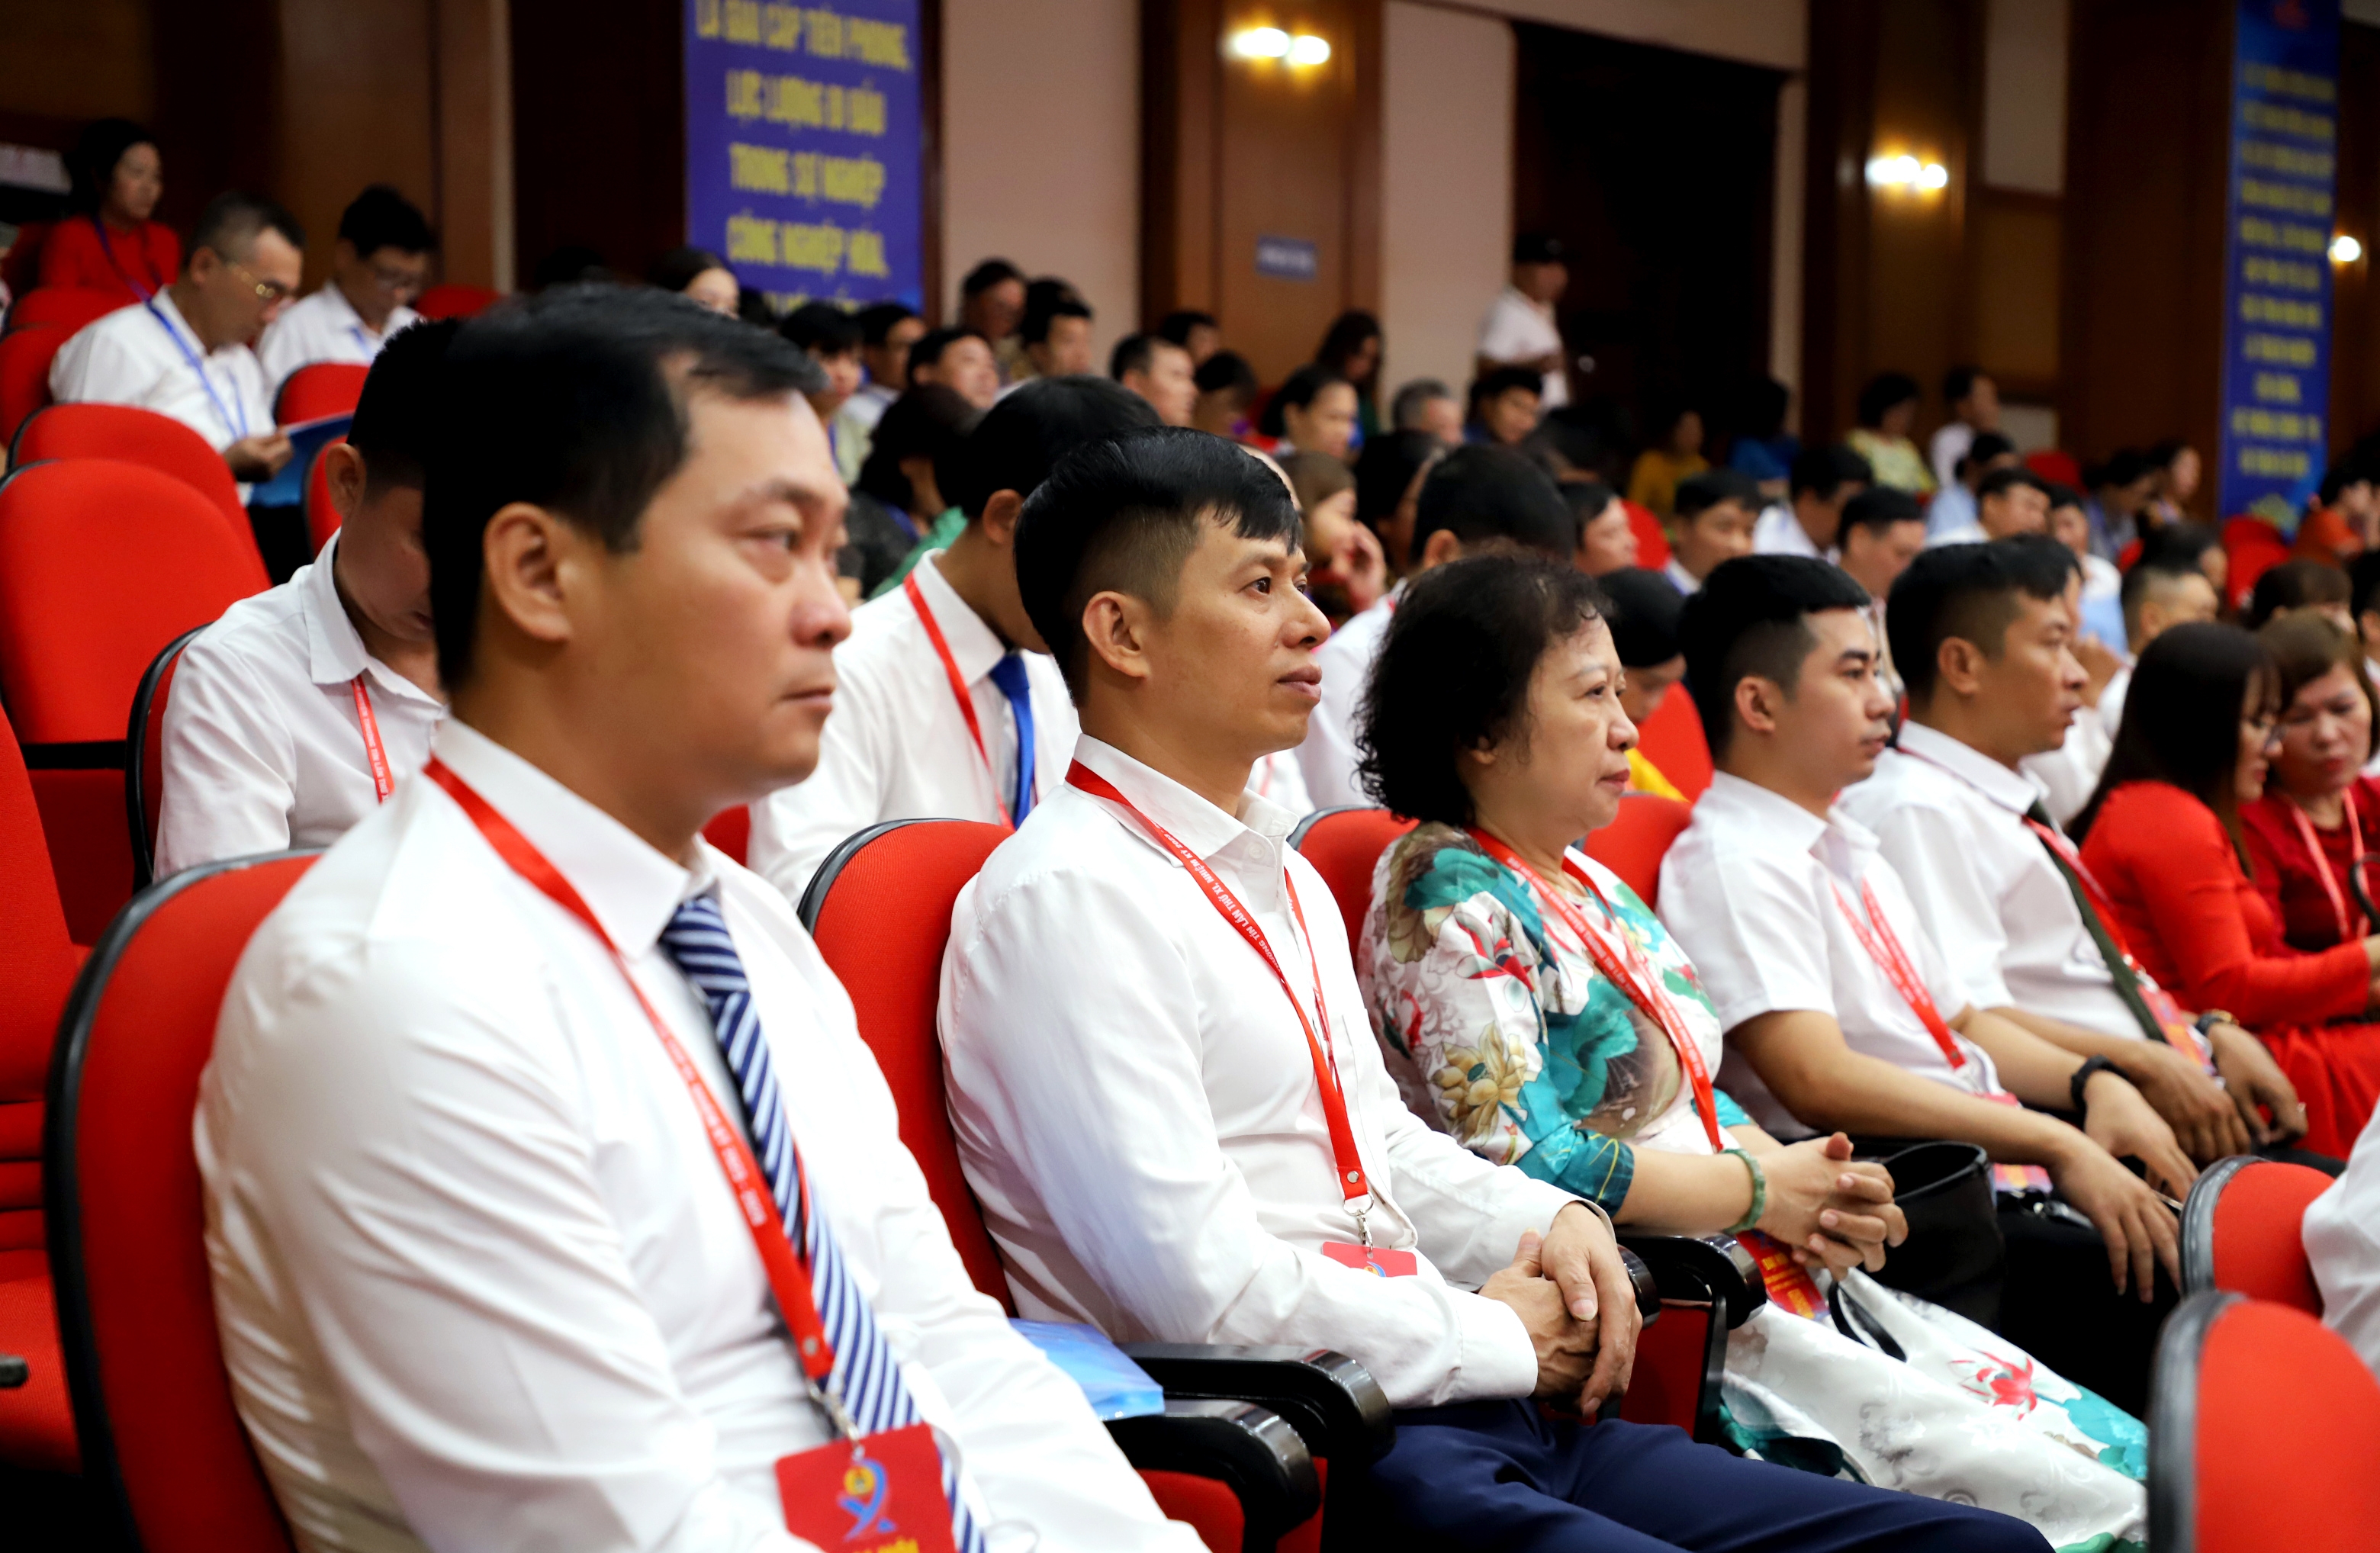 TRỰC TUYẾN HÌNH ẢNH: Đại hội Công đoàn huyện Thường Tín lần thứ XI, nhiệm kỳ 2023 - 2028